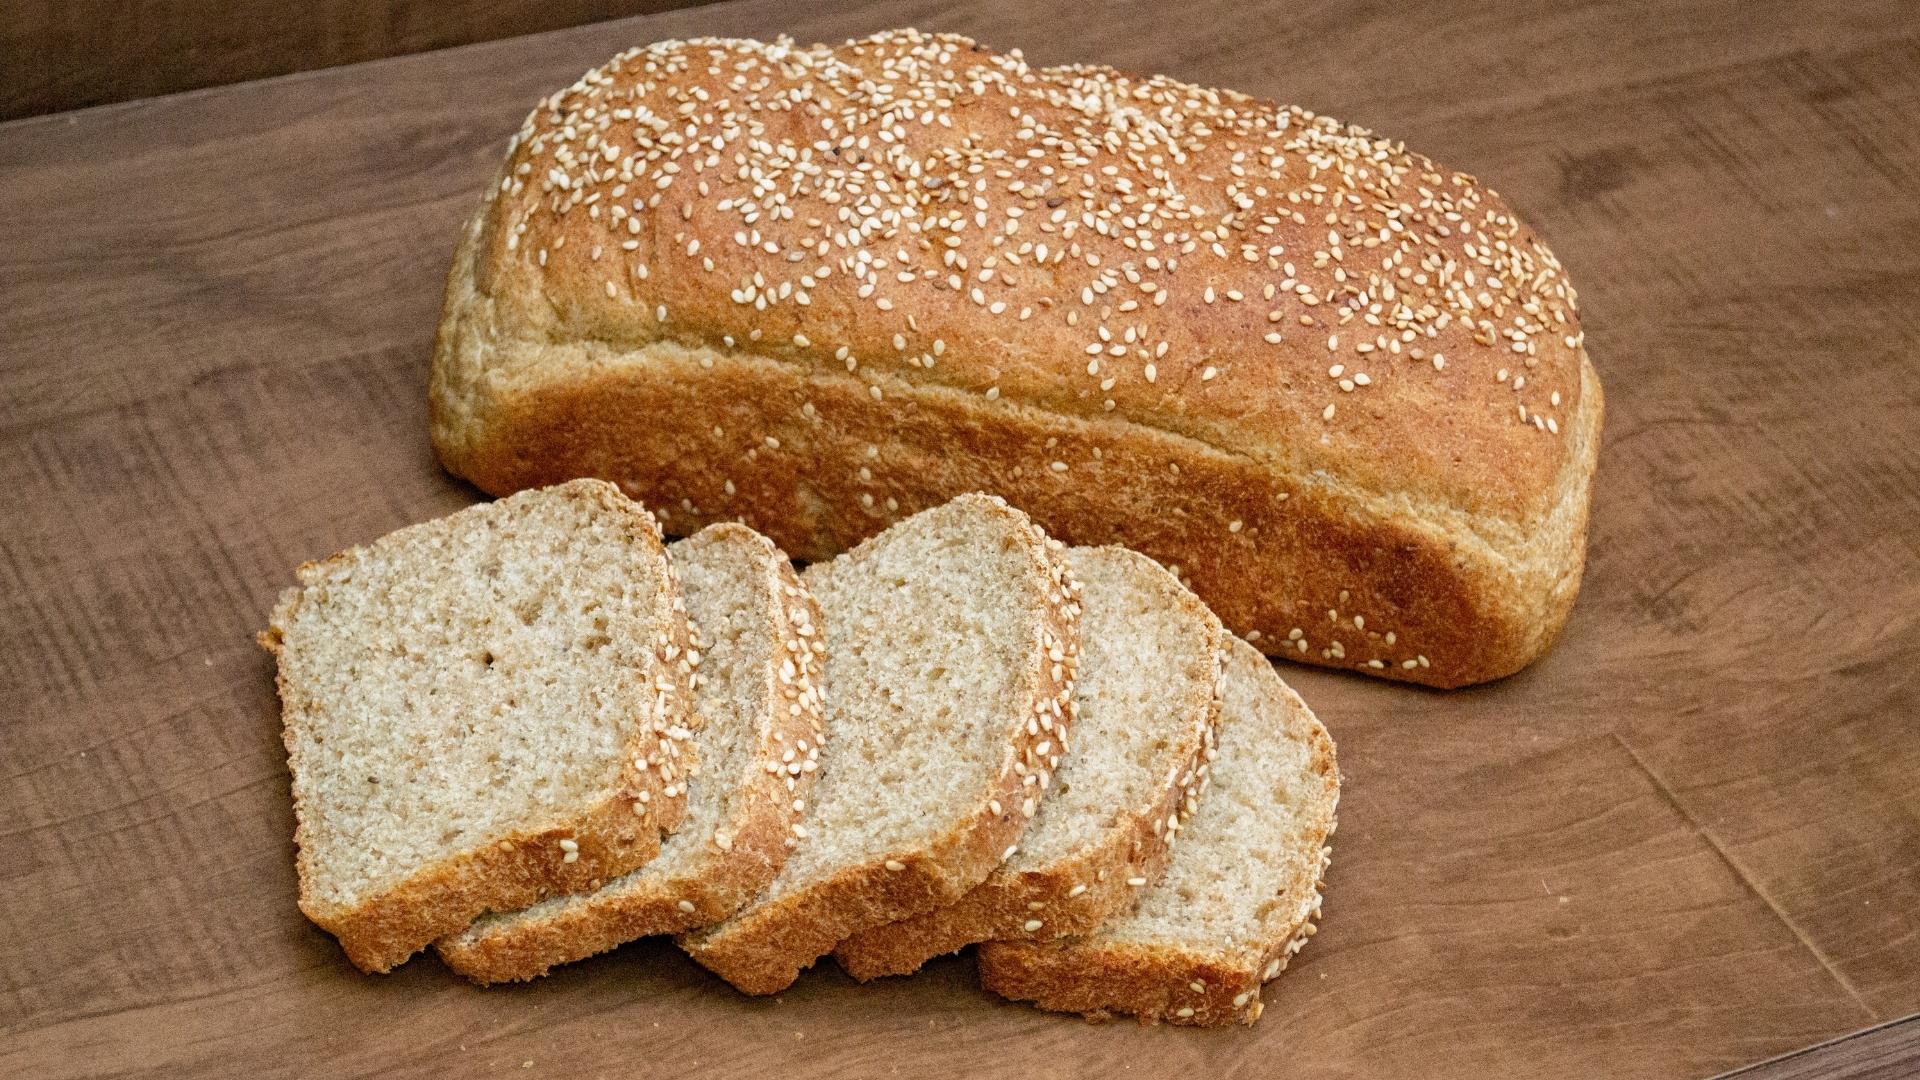 Pronto em 5 minutos: aprenda a fazer um delicioso pão caseiro no micro-ondas